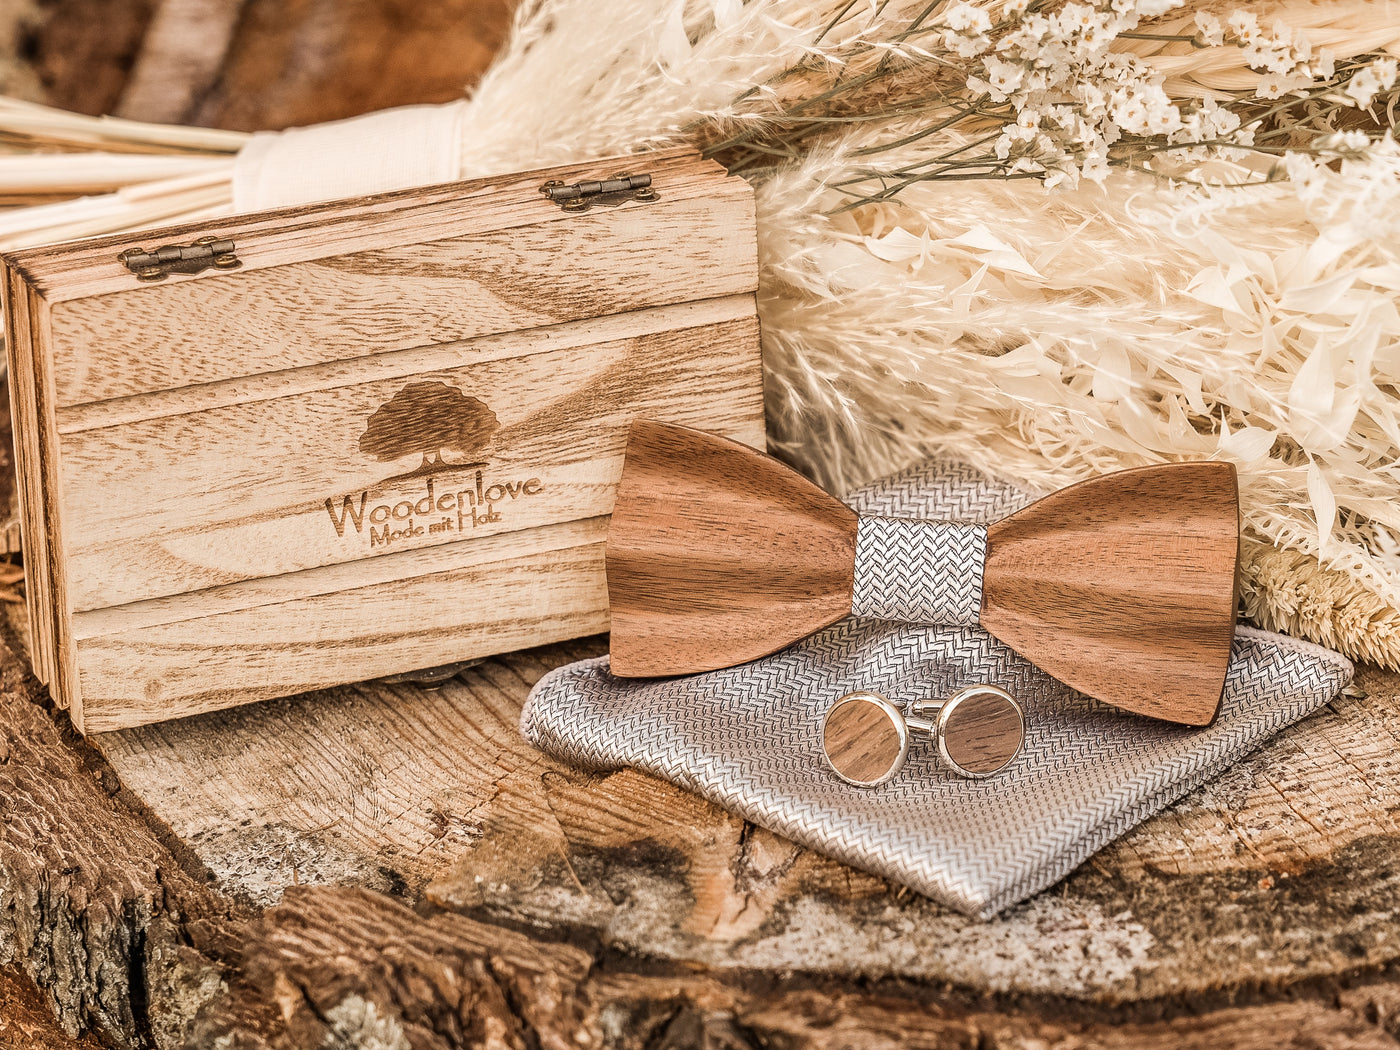 Holzfliege "Windsor" - Woodenlove